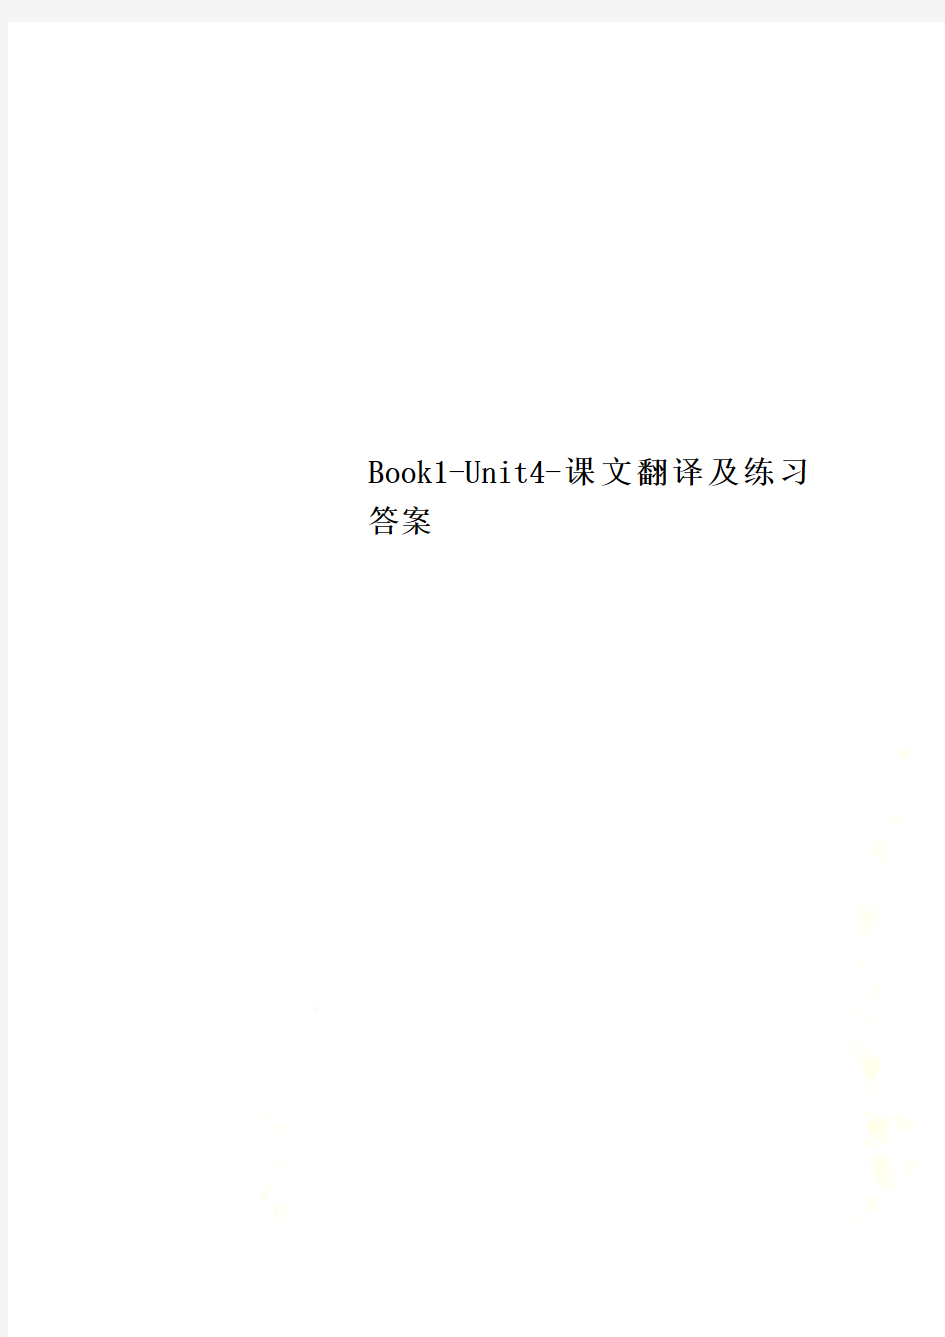 Book1-Unit4-课文翻译及练习答案